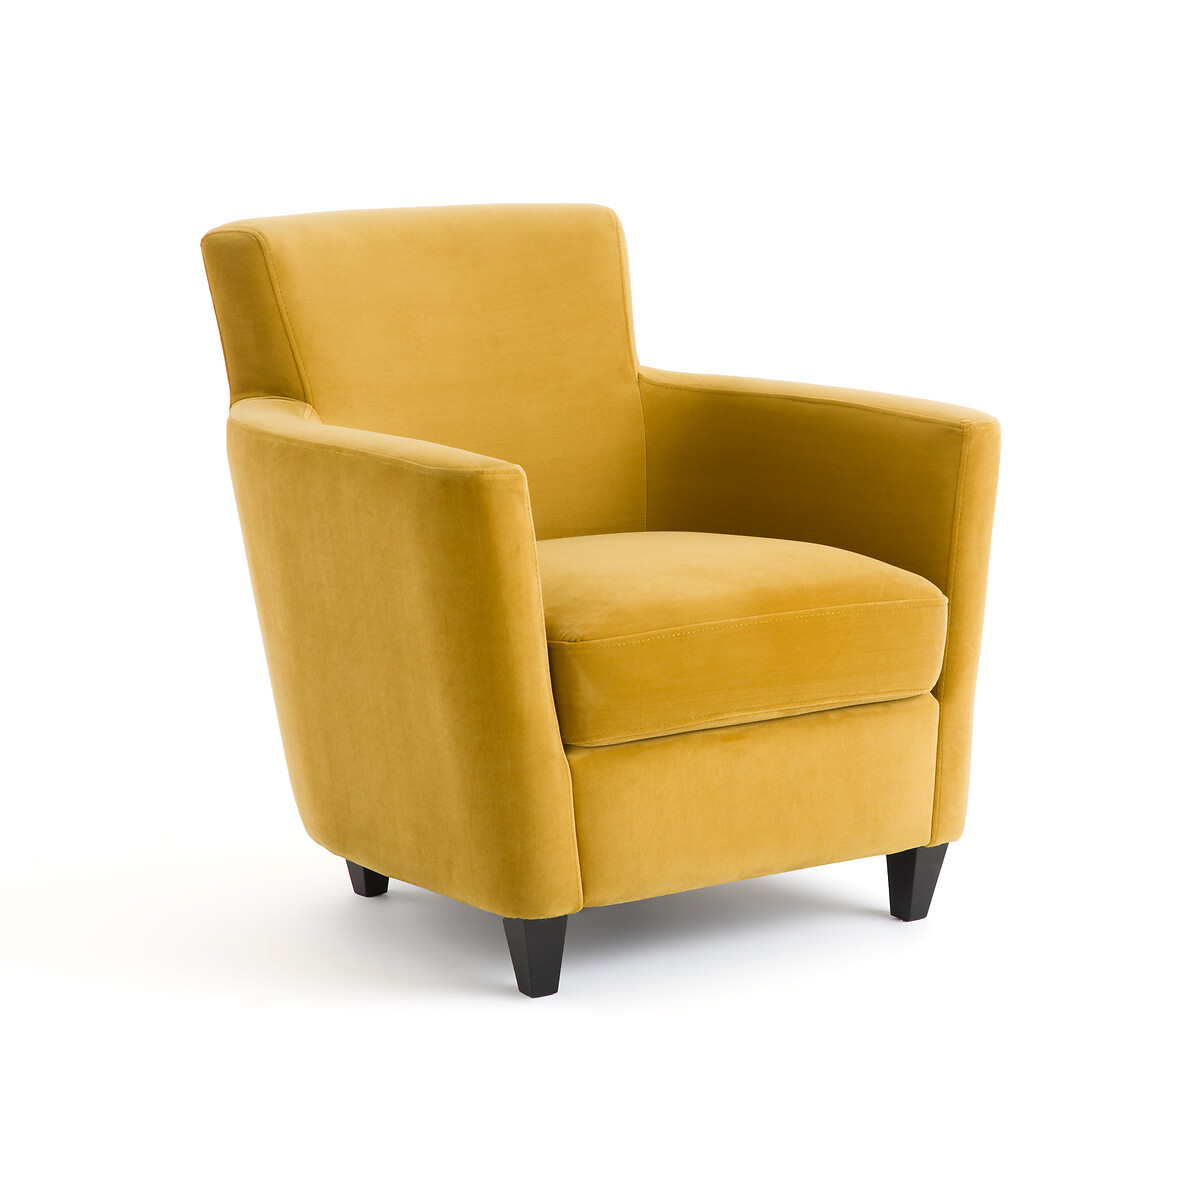 Кресло из велюра Mathesson единый размер желтый кресло из стеблей ротанга и велюра dhony единый размер желтый